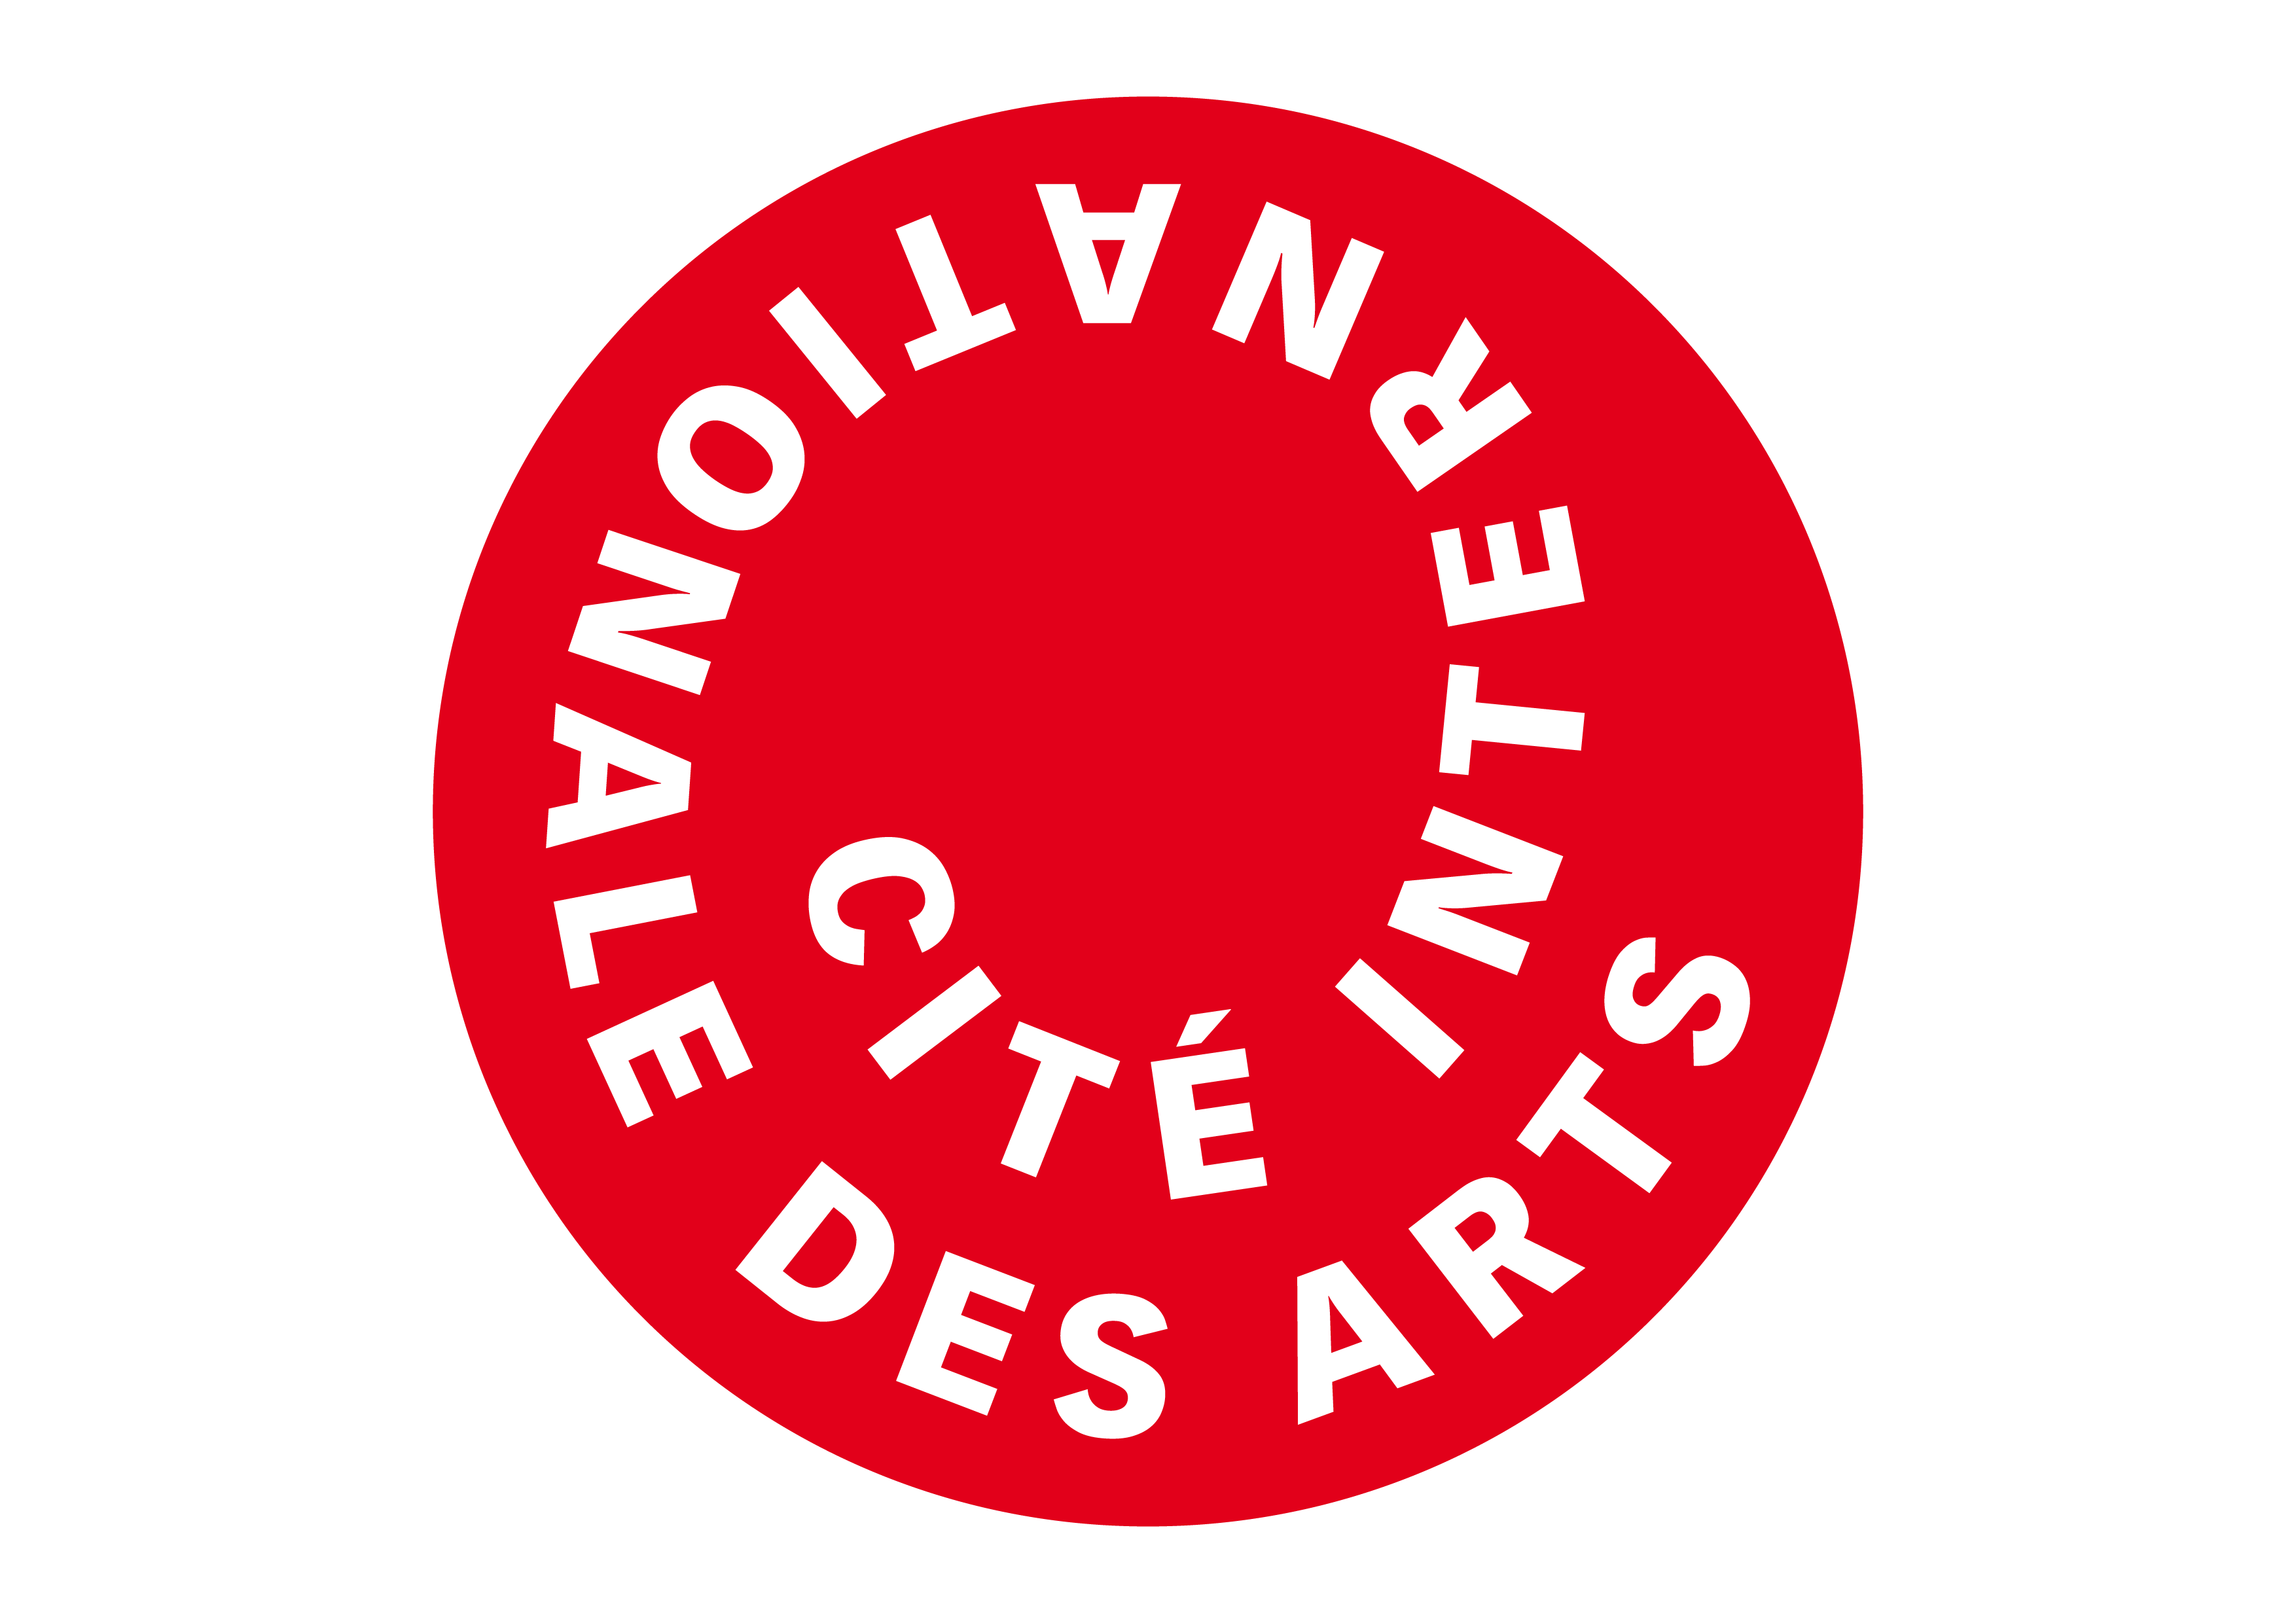 Cité internationale des arts